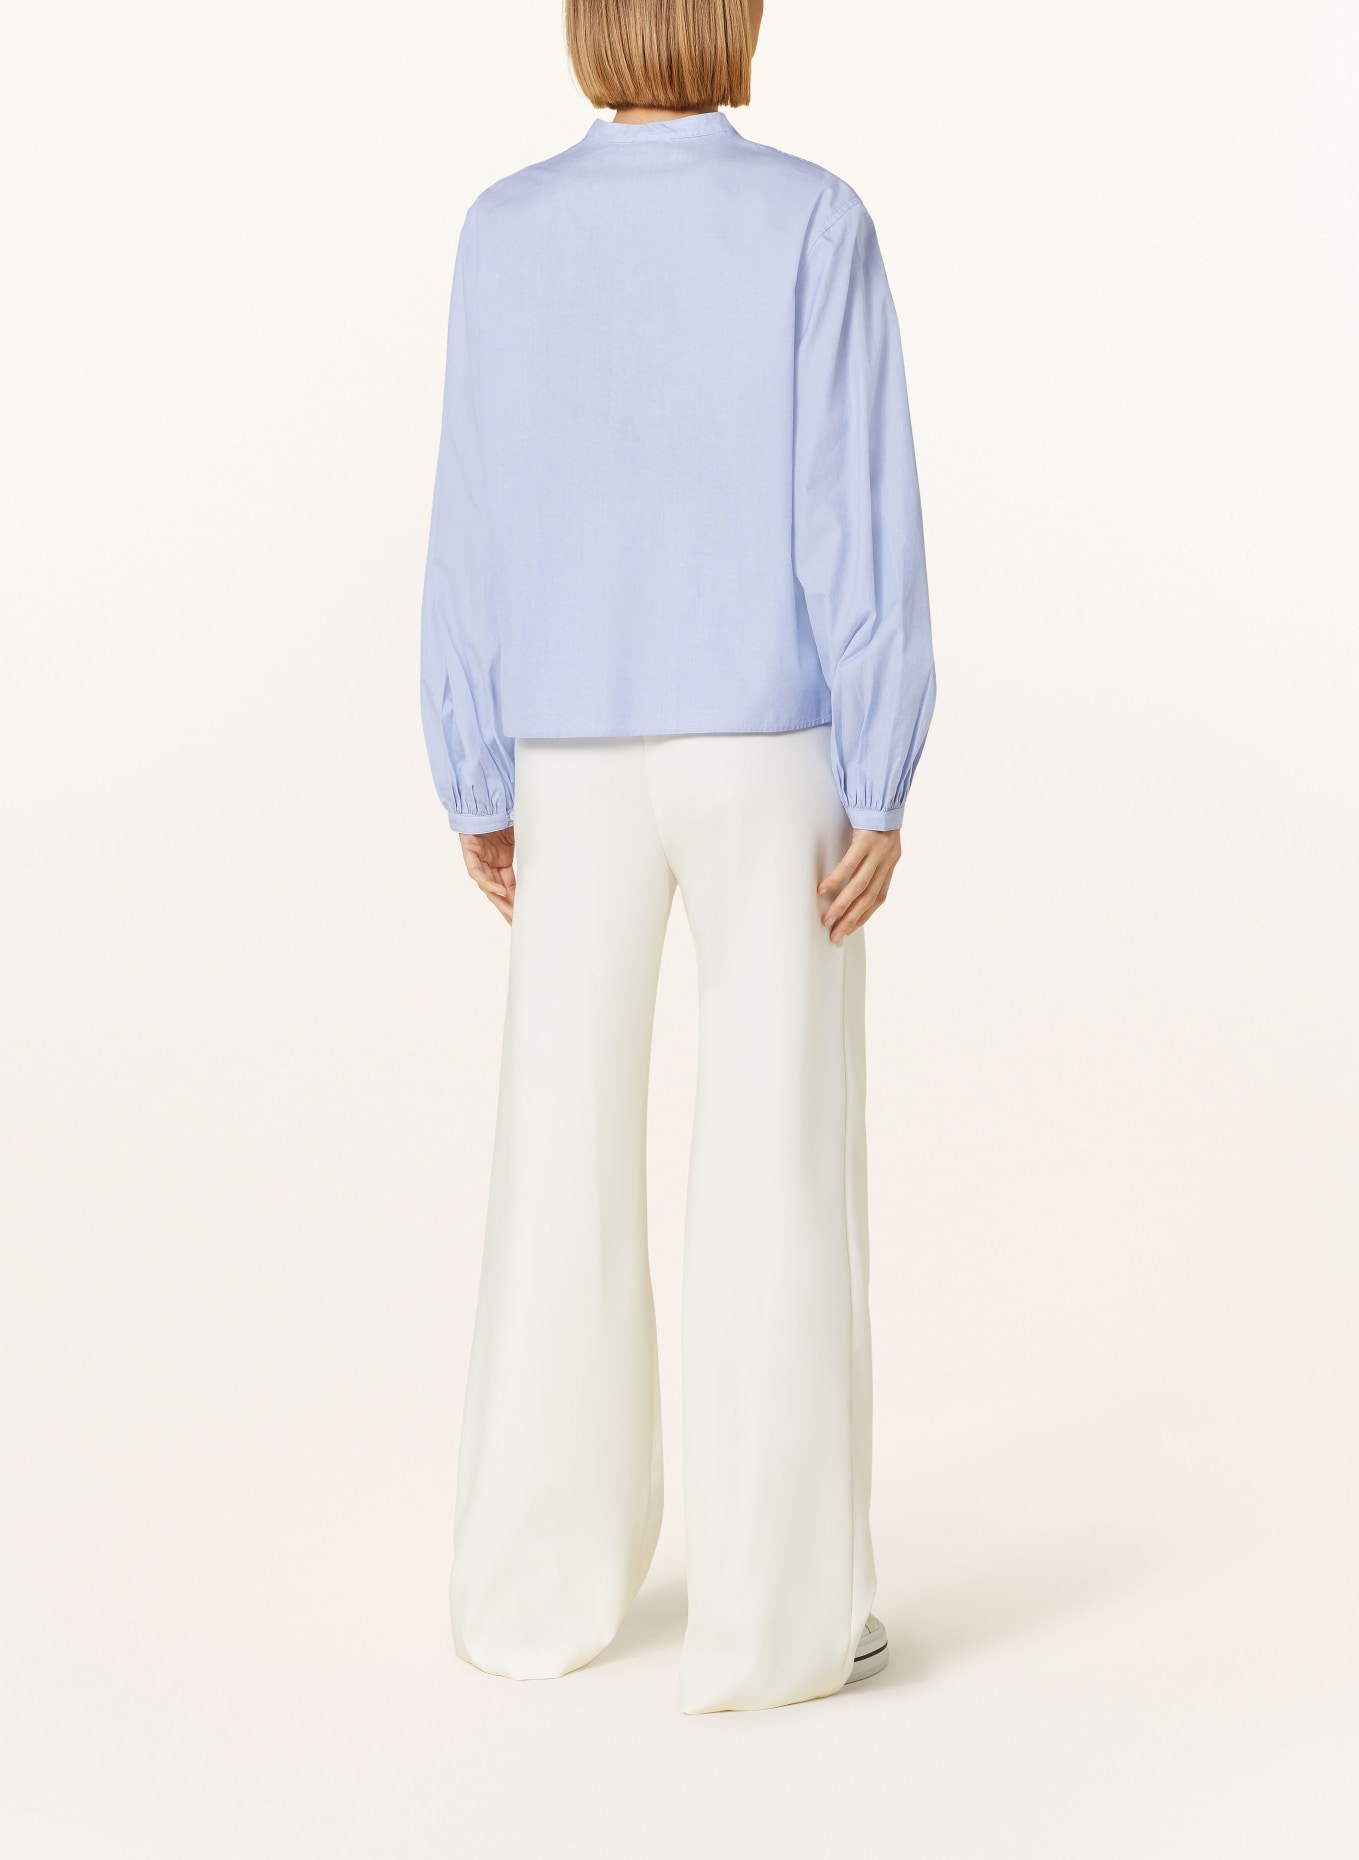 POLO RALPH LAUREN Shirt blouse, Color: LIGHT BLUE (Image 3)